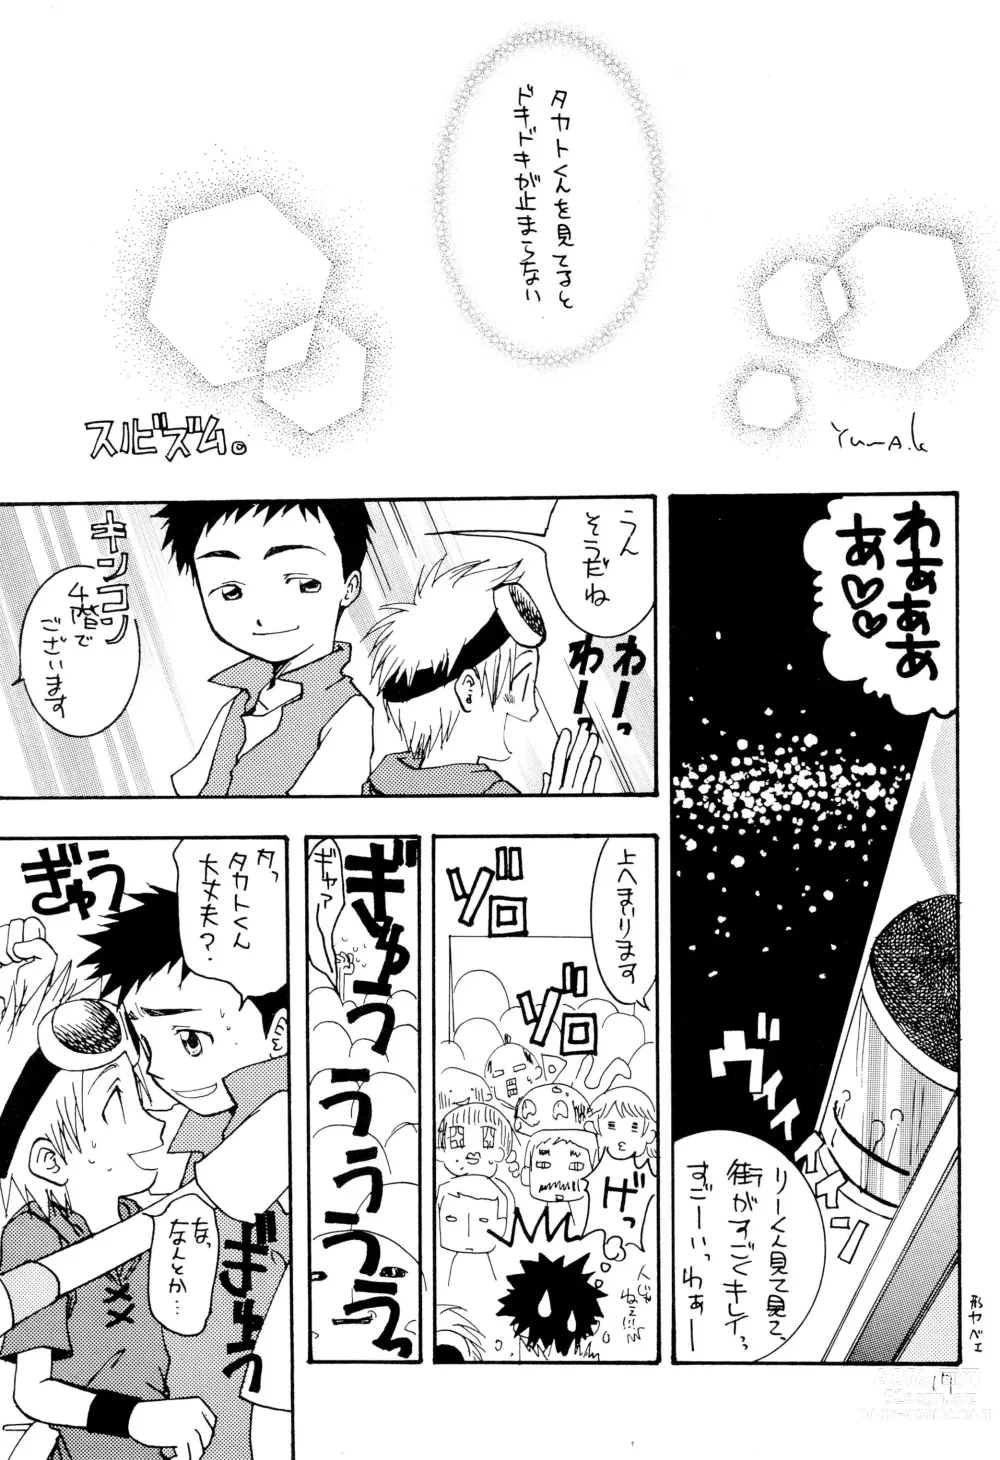 Page 19 of doujinshi LiTaka 2